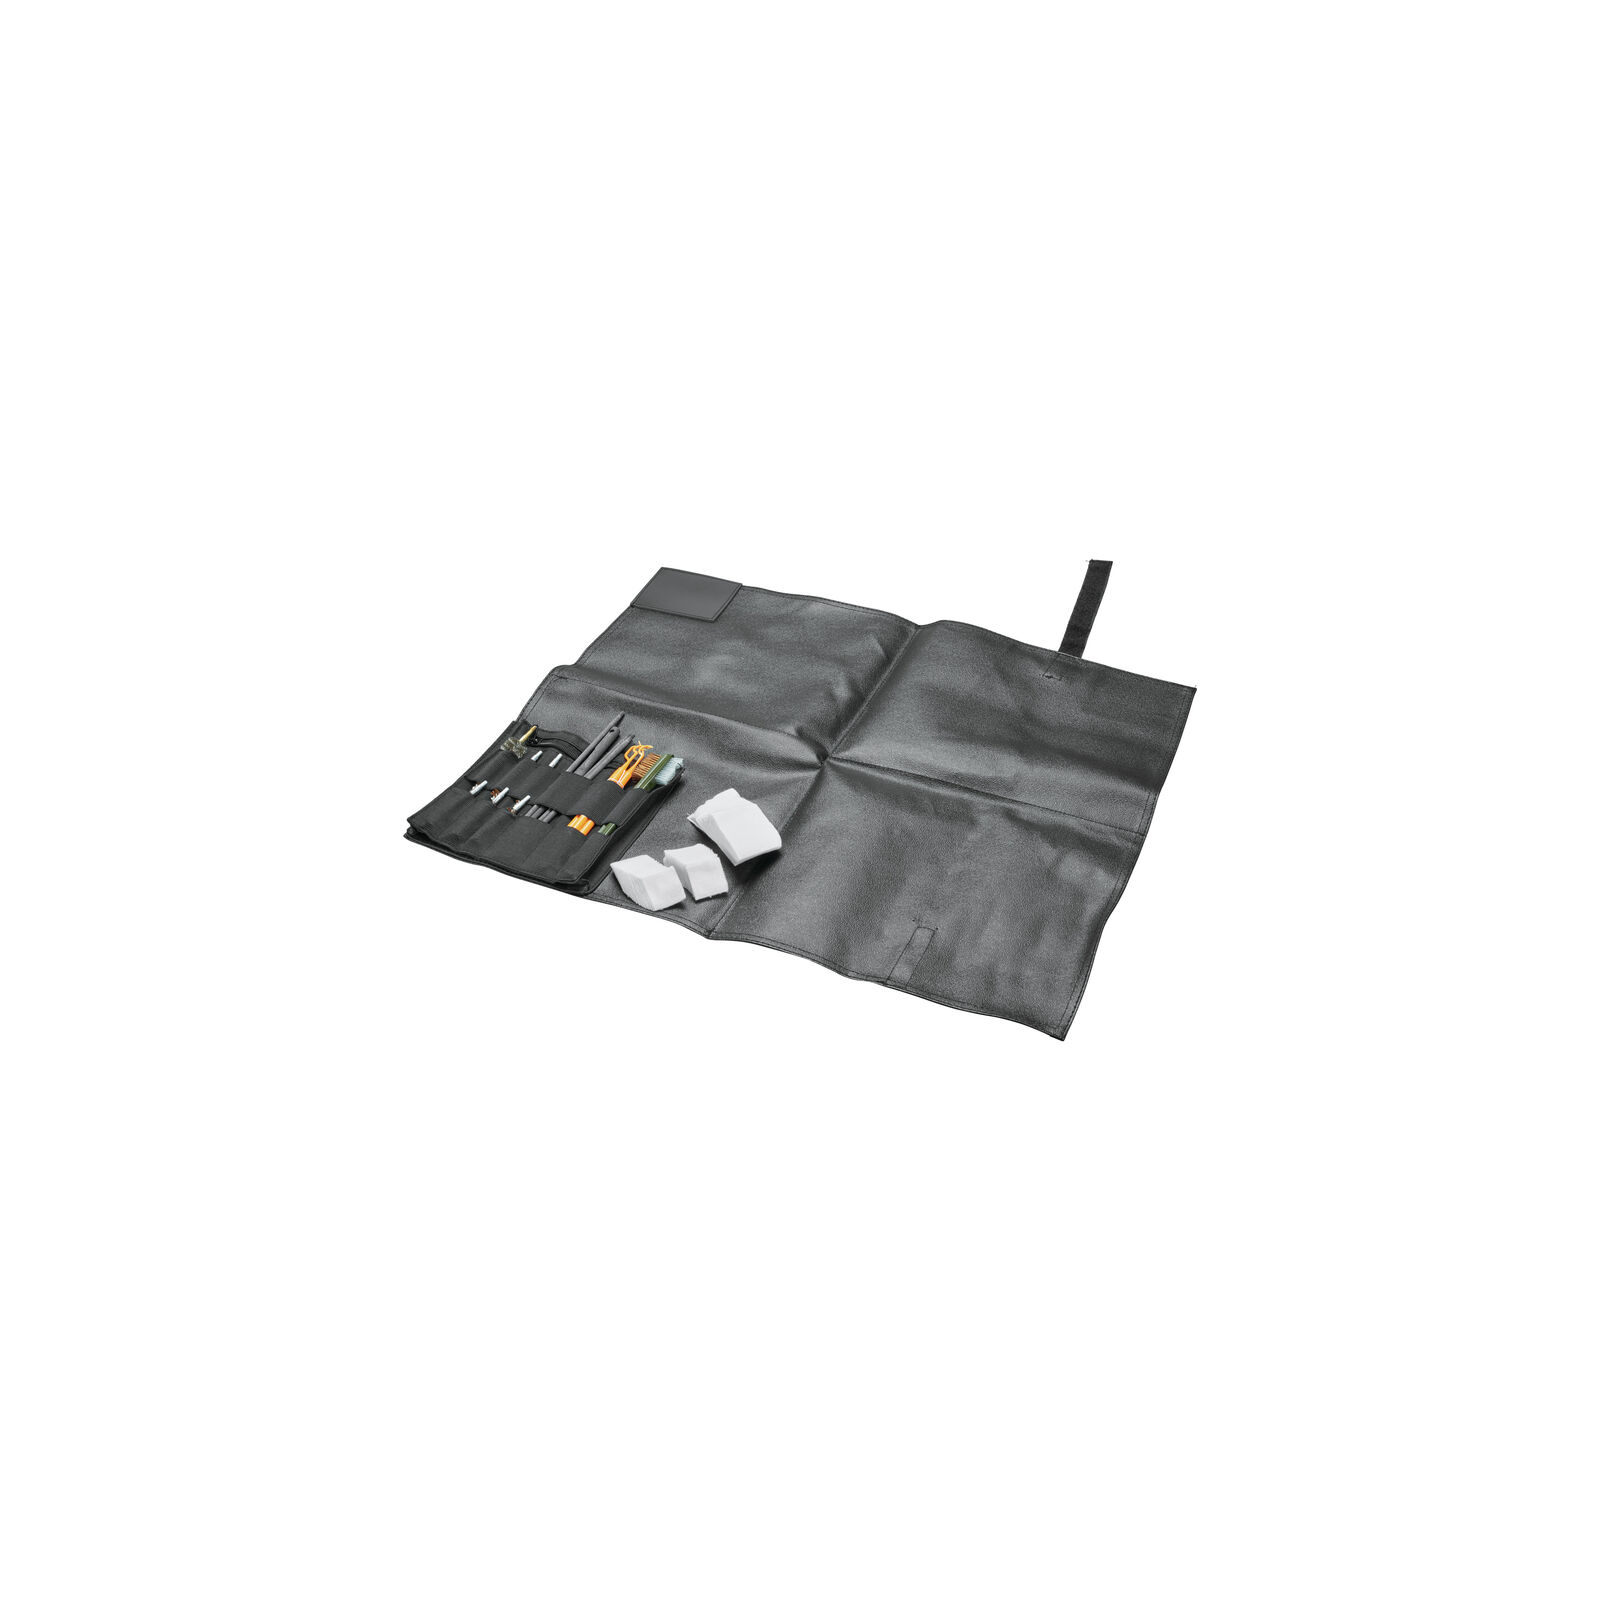 Набір для чистки зброї Hoppe's Range Kit with Cleaning Mat (FC4) зображення 2